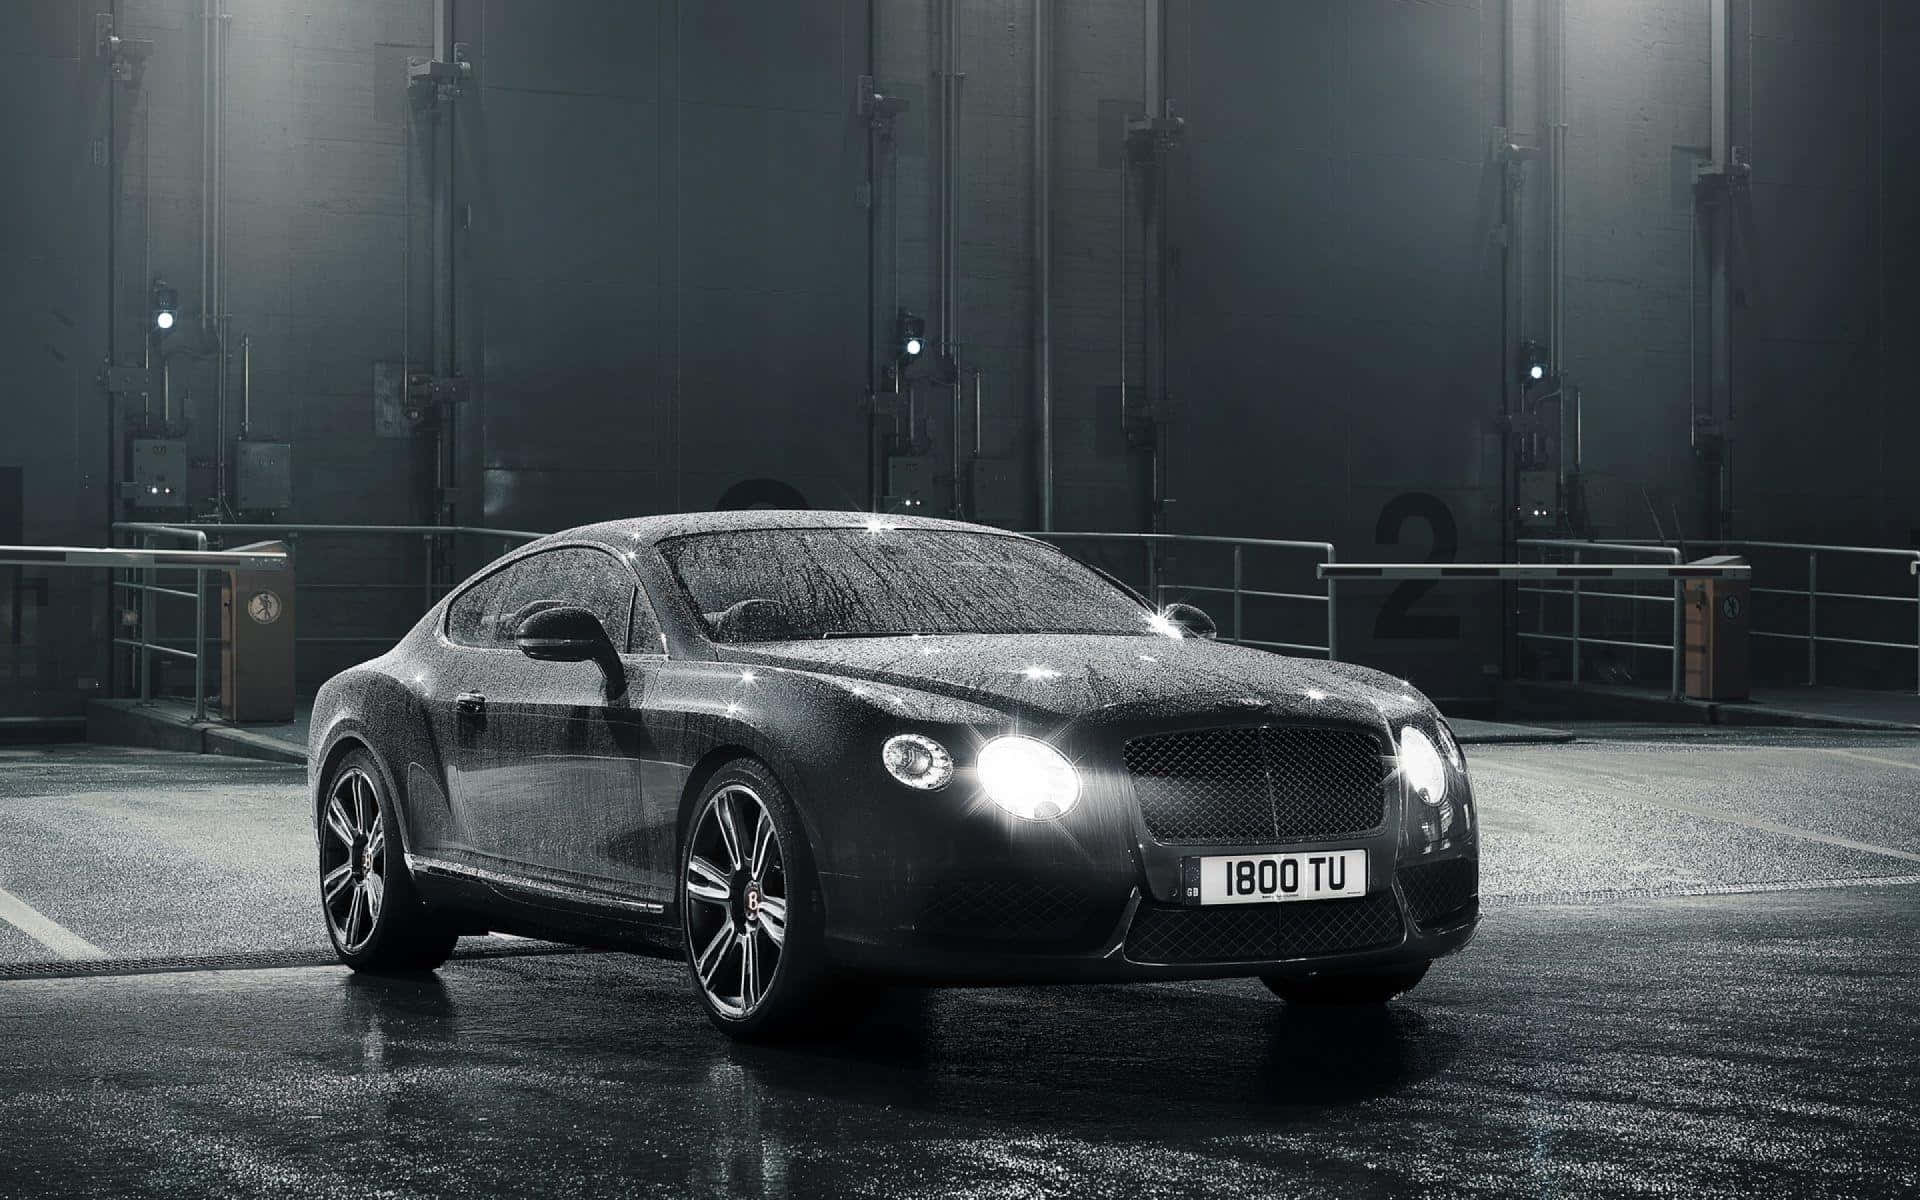 Feel the Power of Bentley Sport Wallpaper